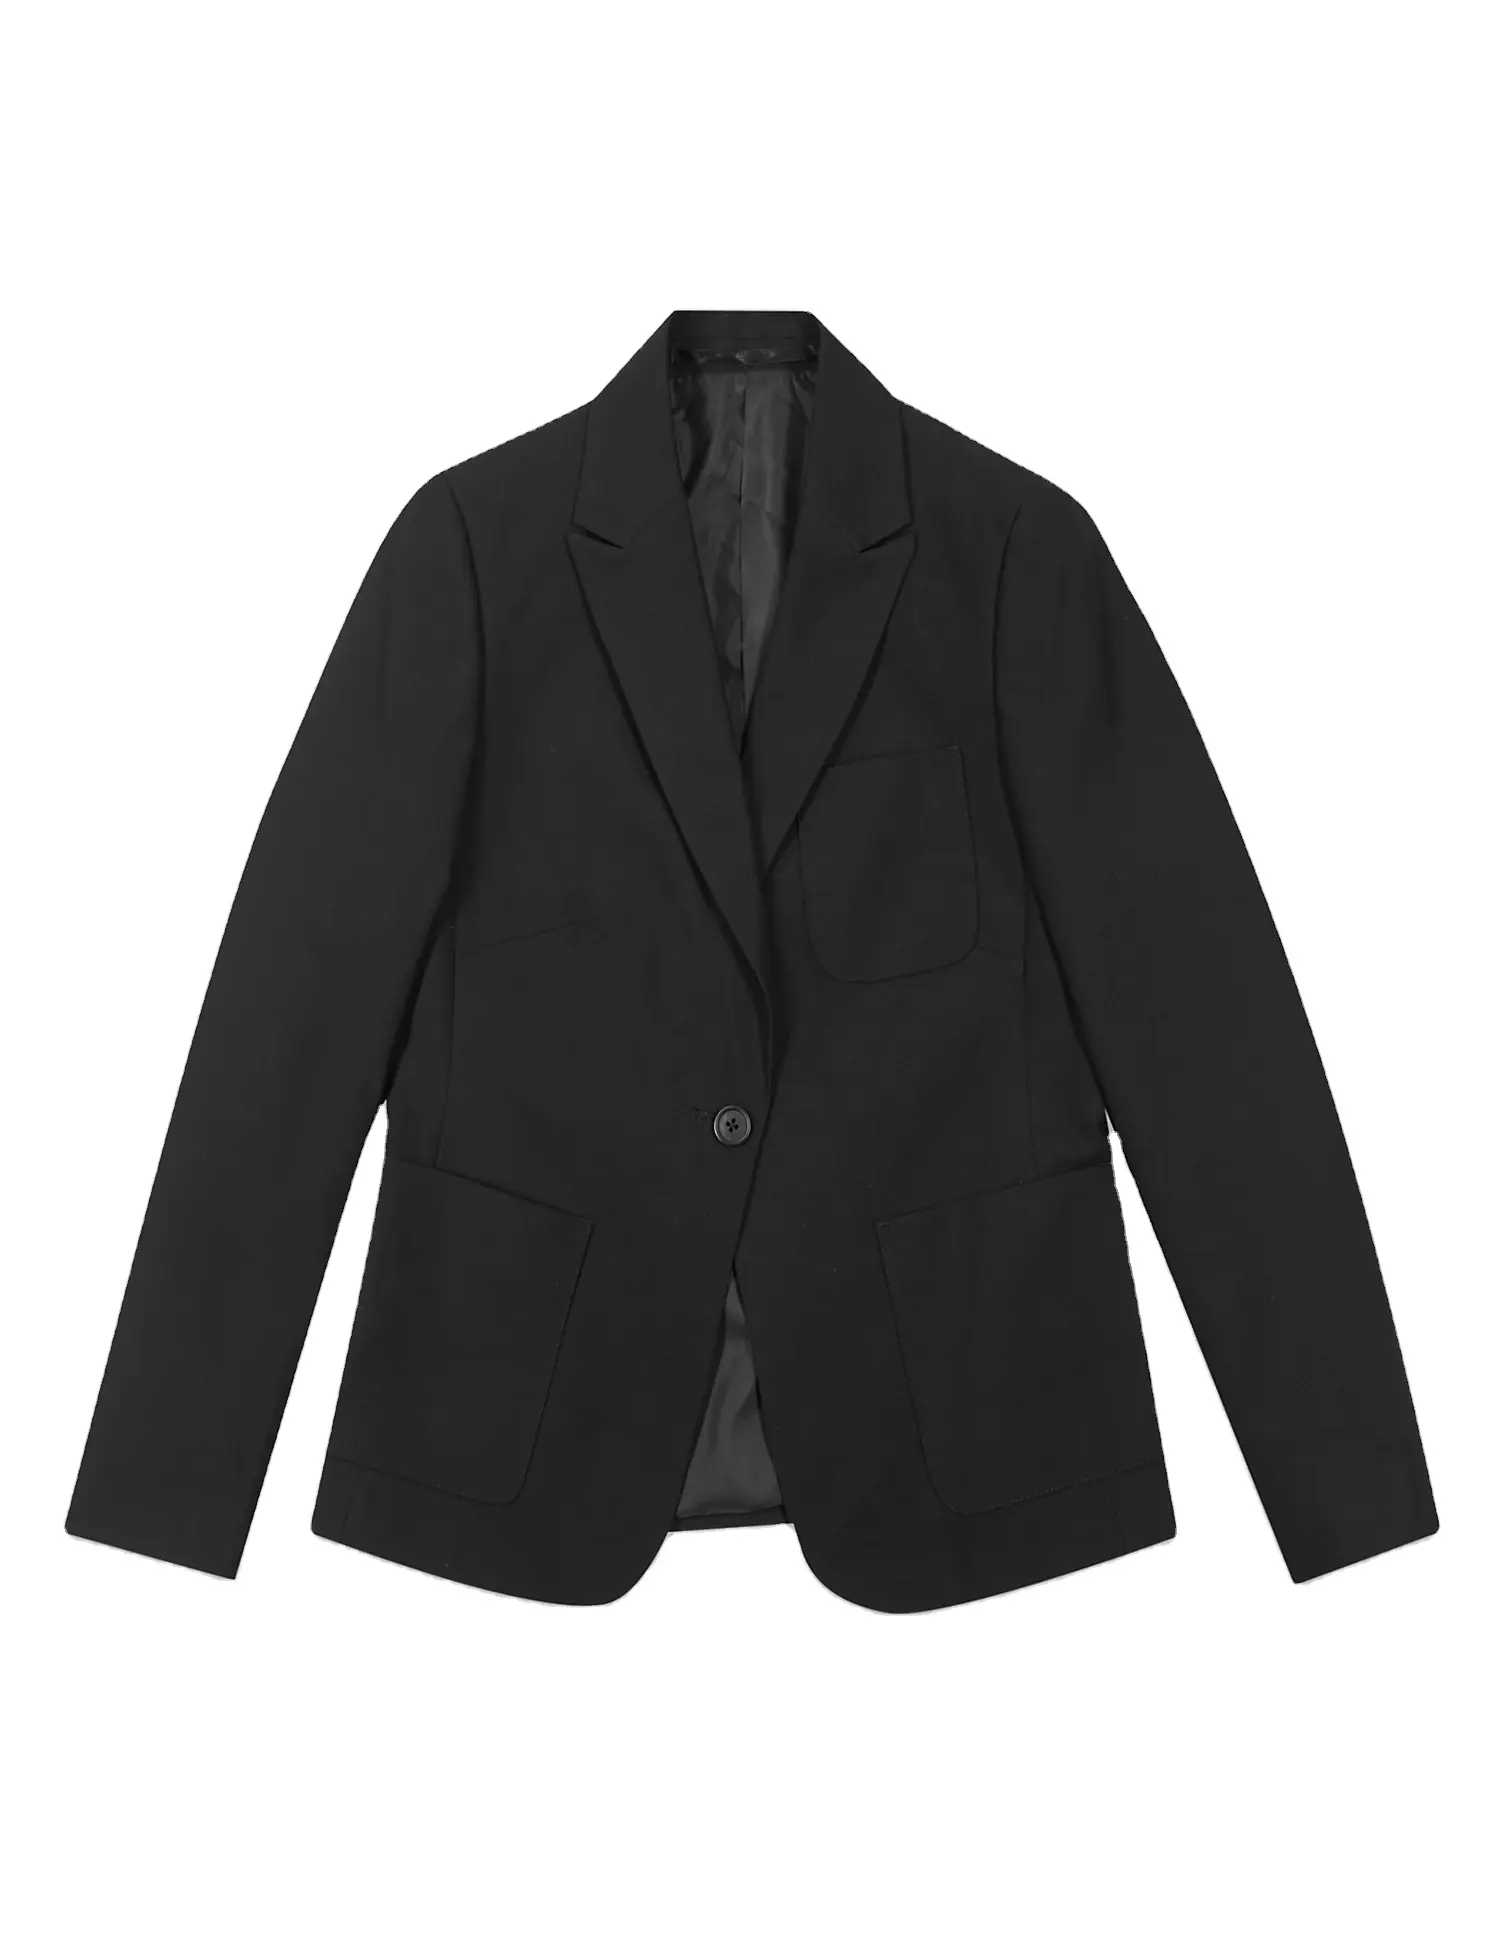 소년 재킷 코트 블레이저 턱시도 옷깃 키즈 Overshirt 정장 의상 새로운 공식 또는 캐주얼